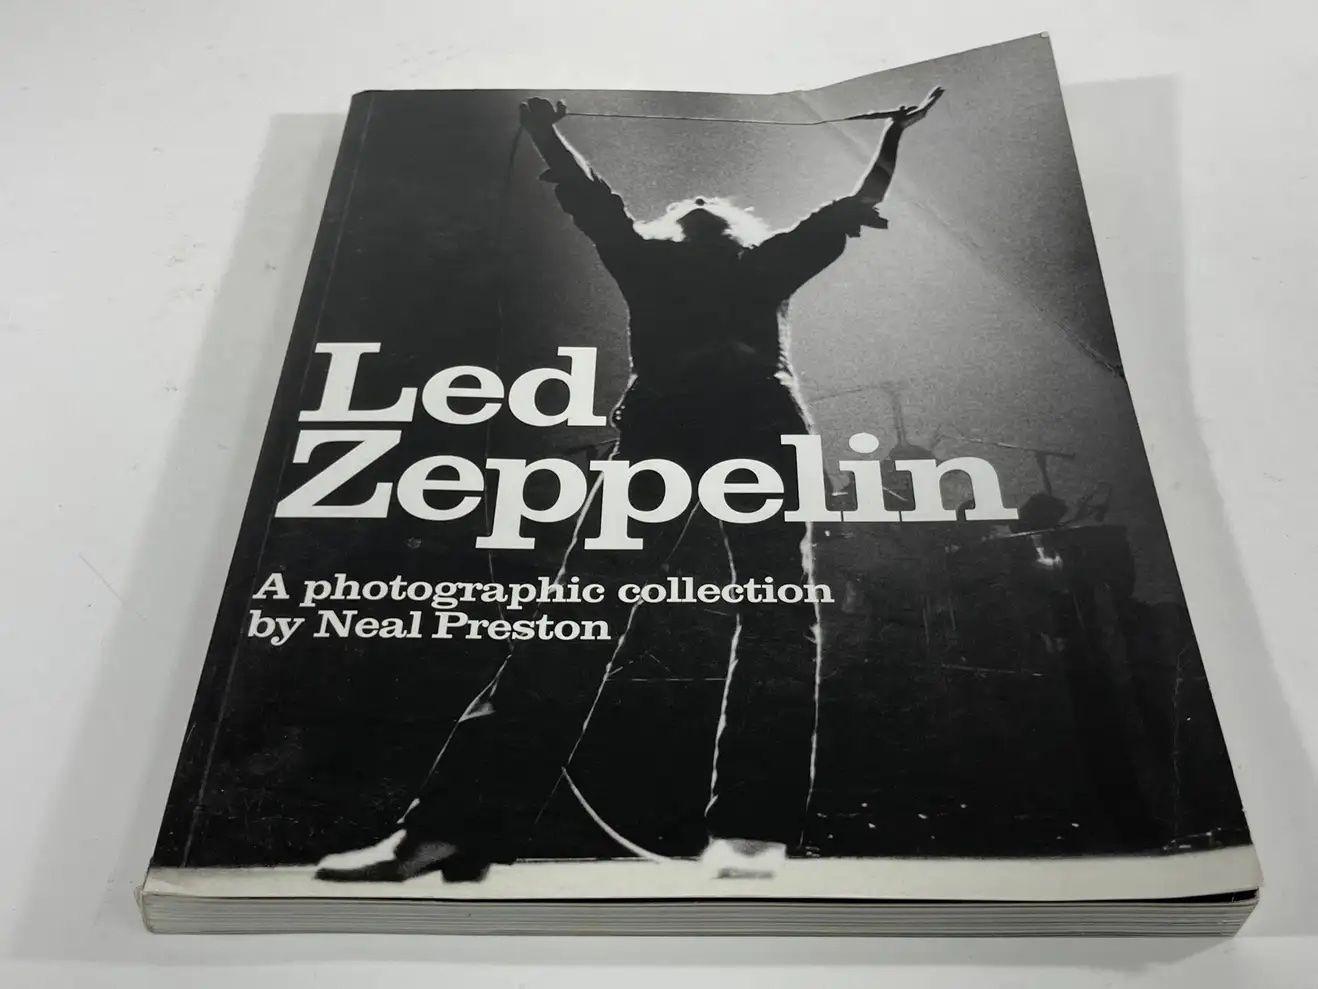 Led Zeppelin A Photographic Collection'S Book von Neal Preston.
Led Zeppelin: A Photographic Collection Book von Neal Preston. 1. Auflage: 2002, vergriffen. Autor: Neal Preston. Softcover-Buch. 192 Seiten großes Fotobuch über die Geschichte der